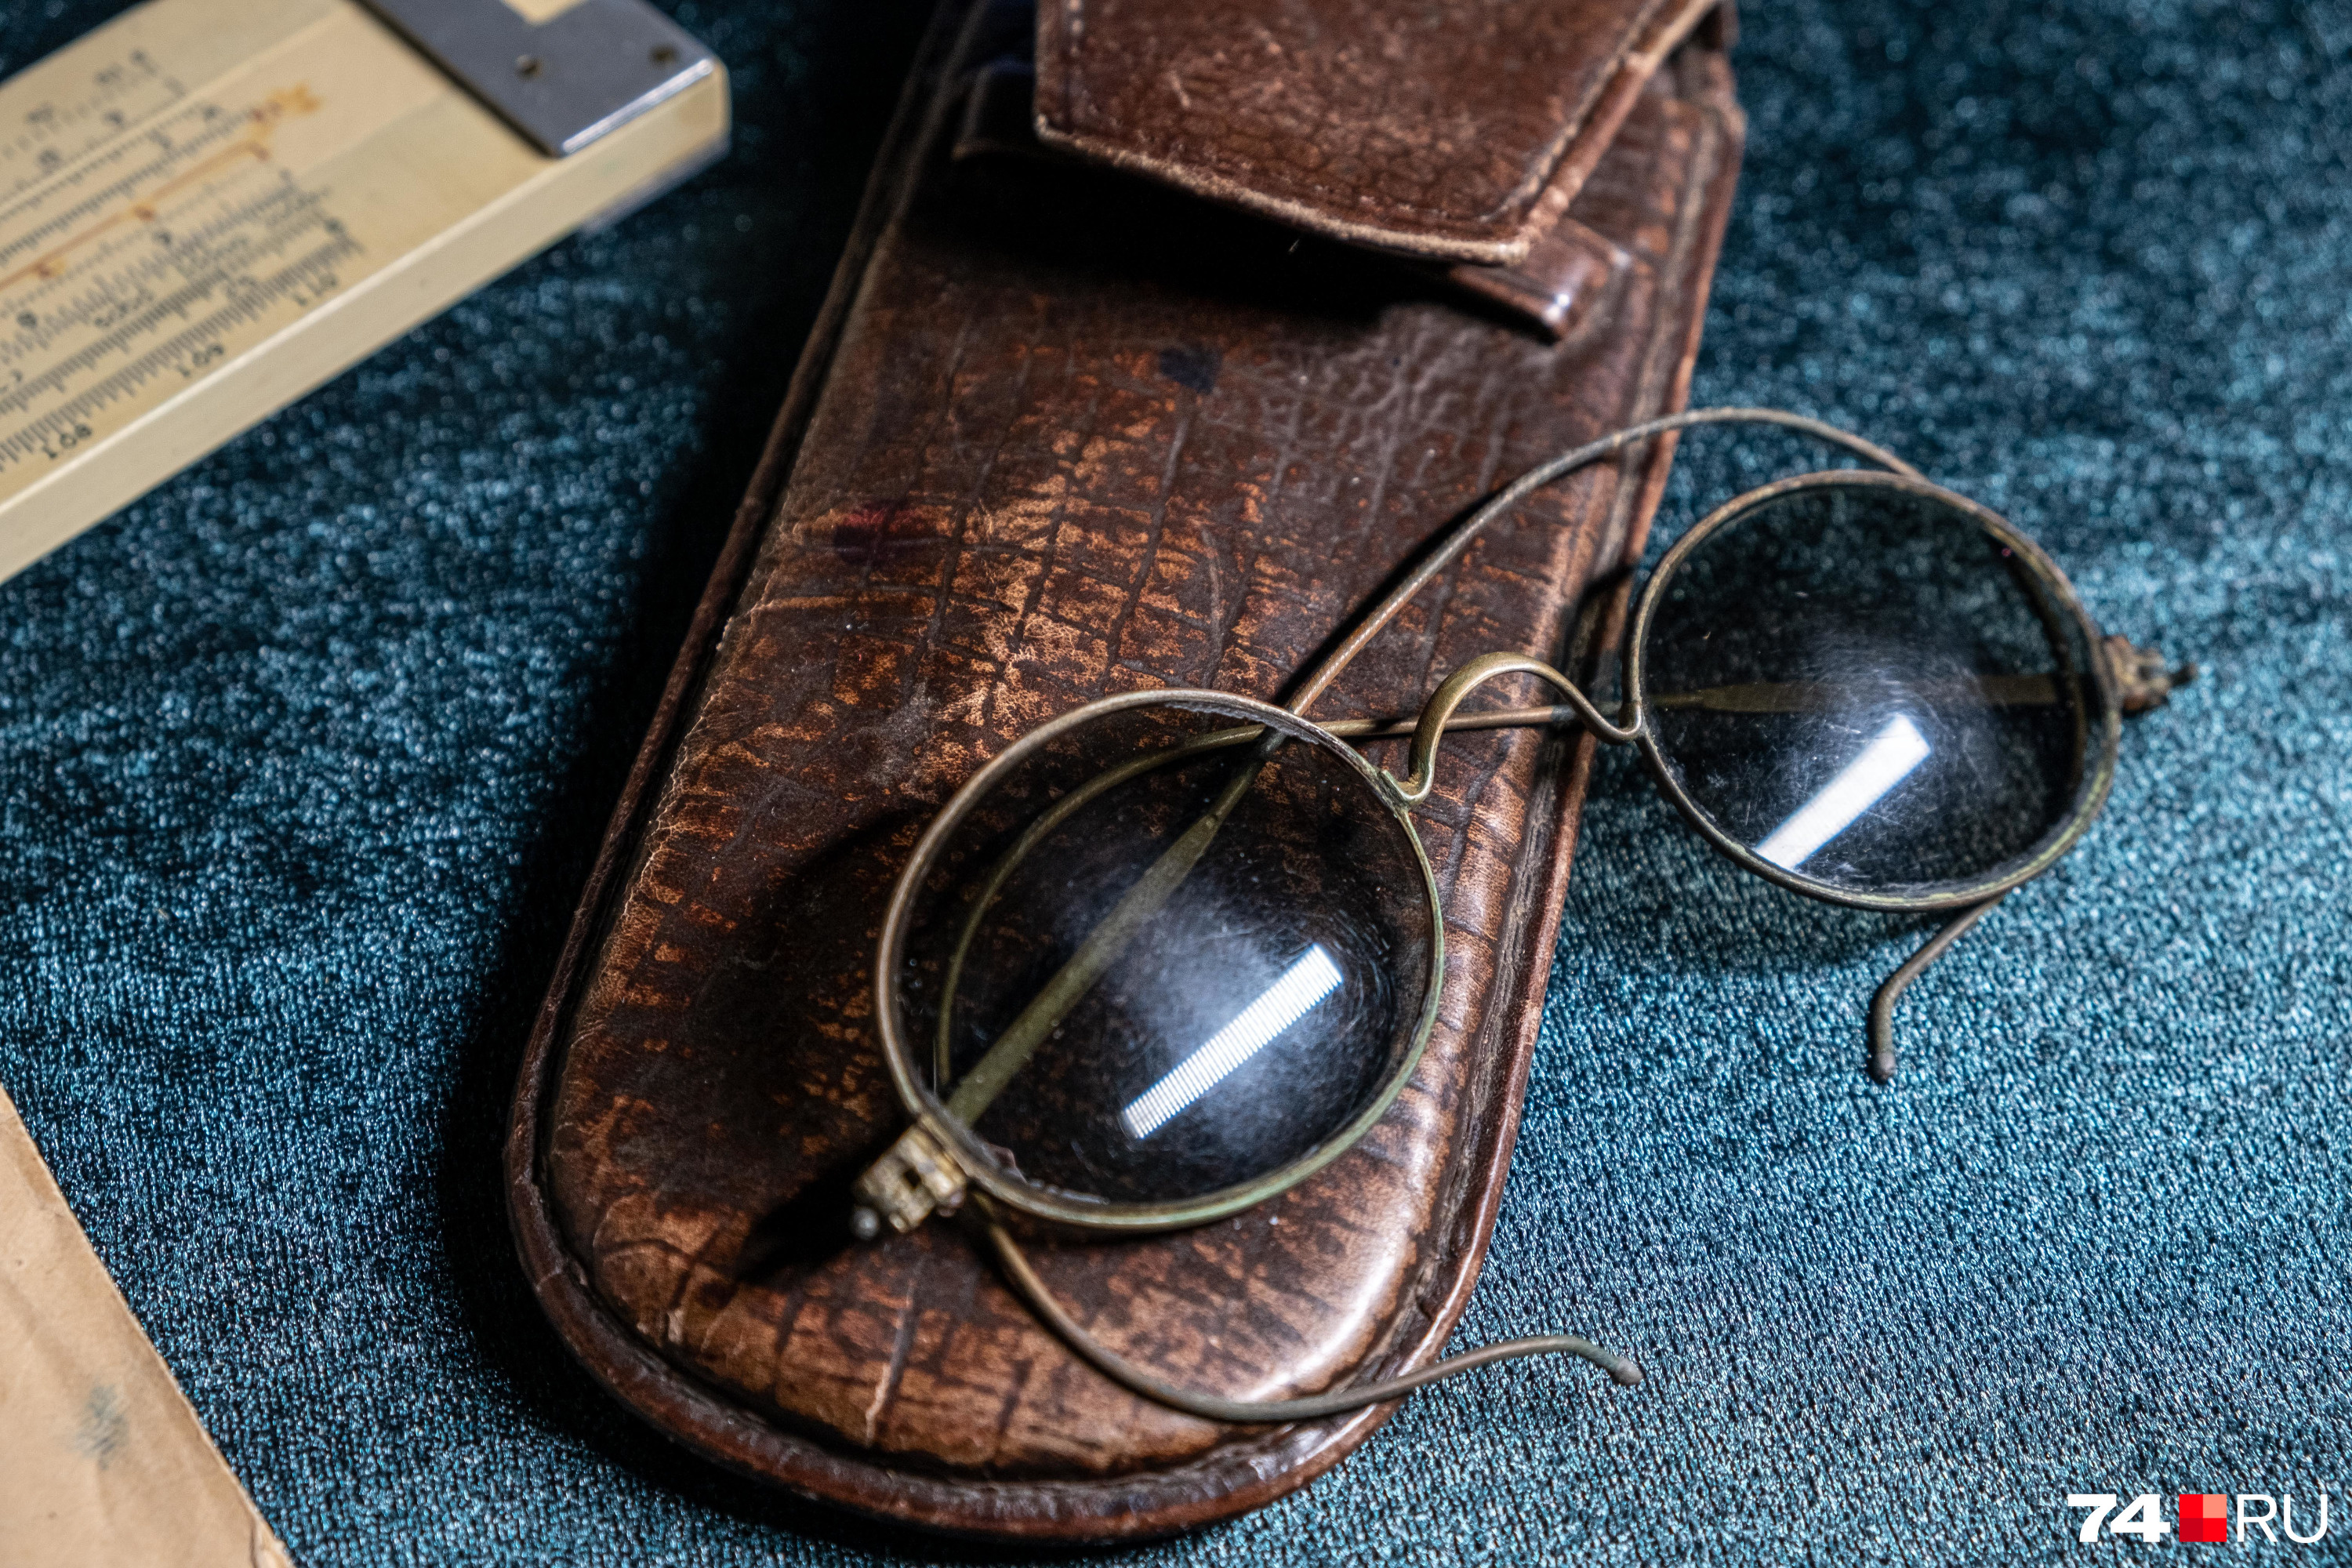 Вот, к примеру, очки круглые солнцезащитные (зеленые стекла) в металлической оправе (латунь, медь) и с кожаным футляром коричневого цвета